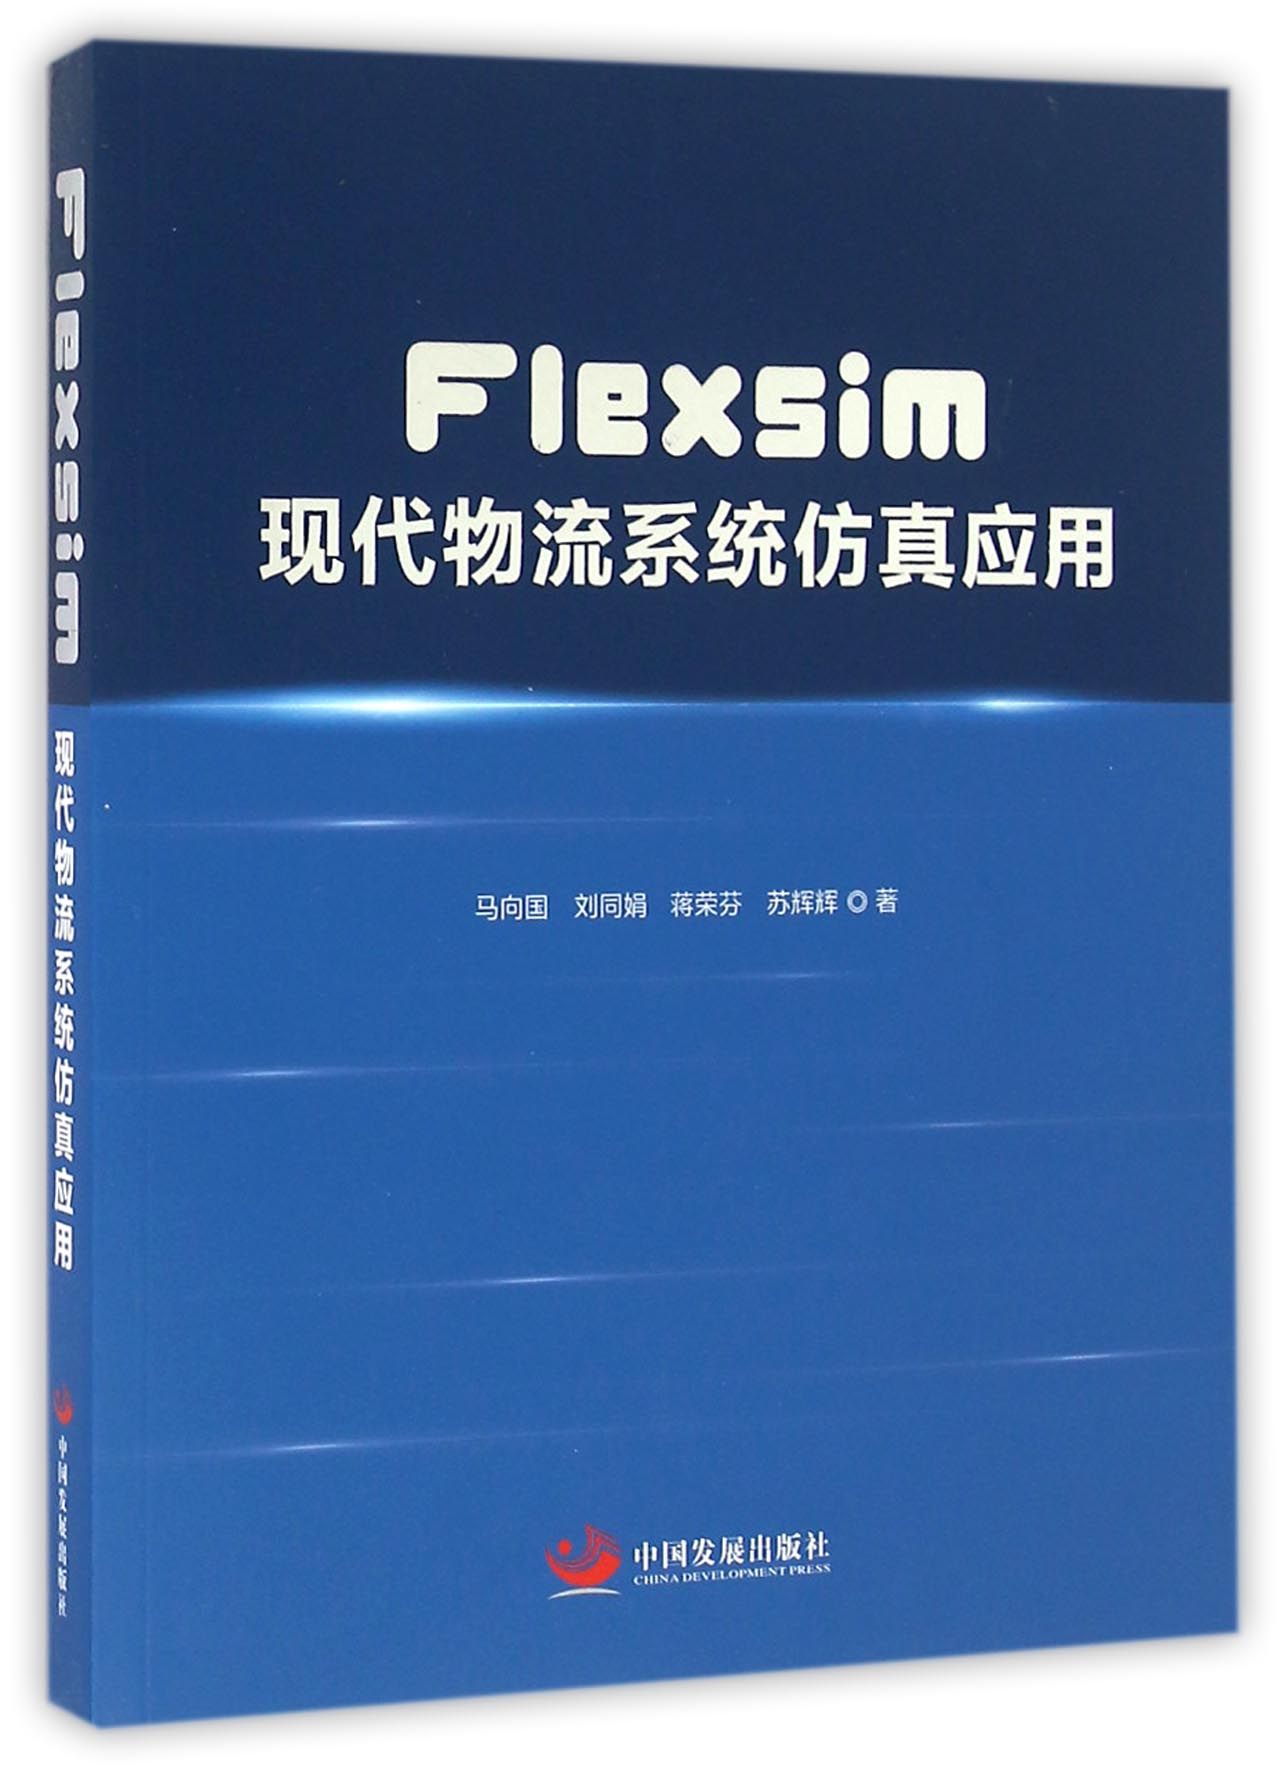 【现货】Flexsim现代物流系统应用马向国//刘同娟//蒋荣芬//苏辉辉9787517704980中国发展管理/生产与运作管理